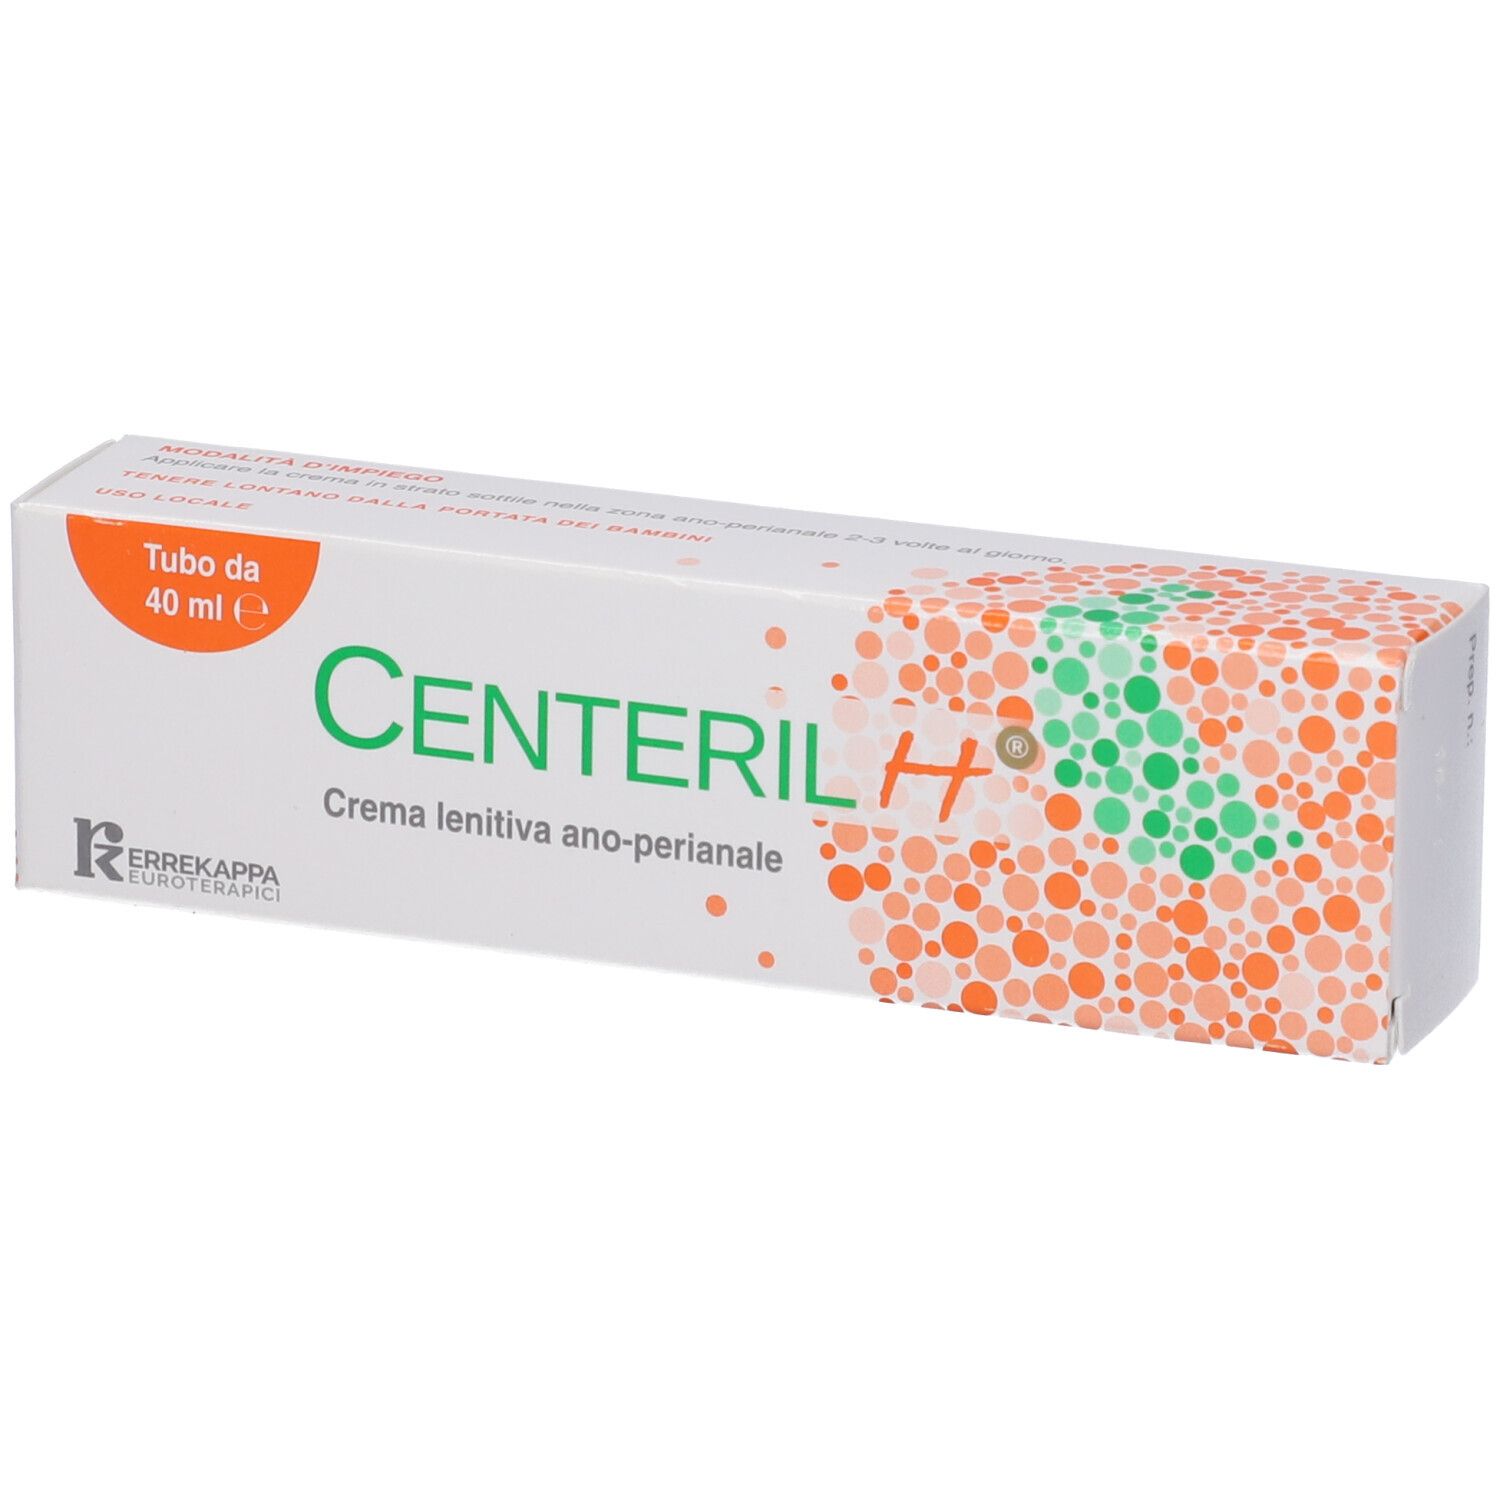 Image of Centeril H® Crema